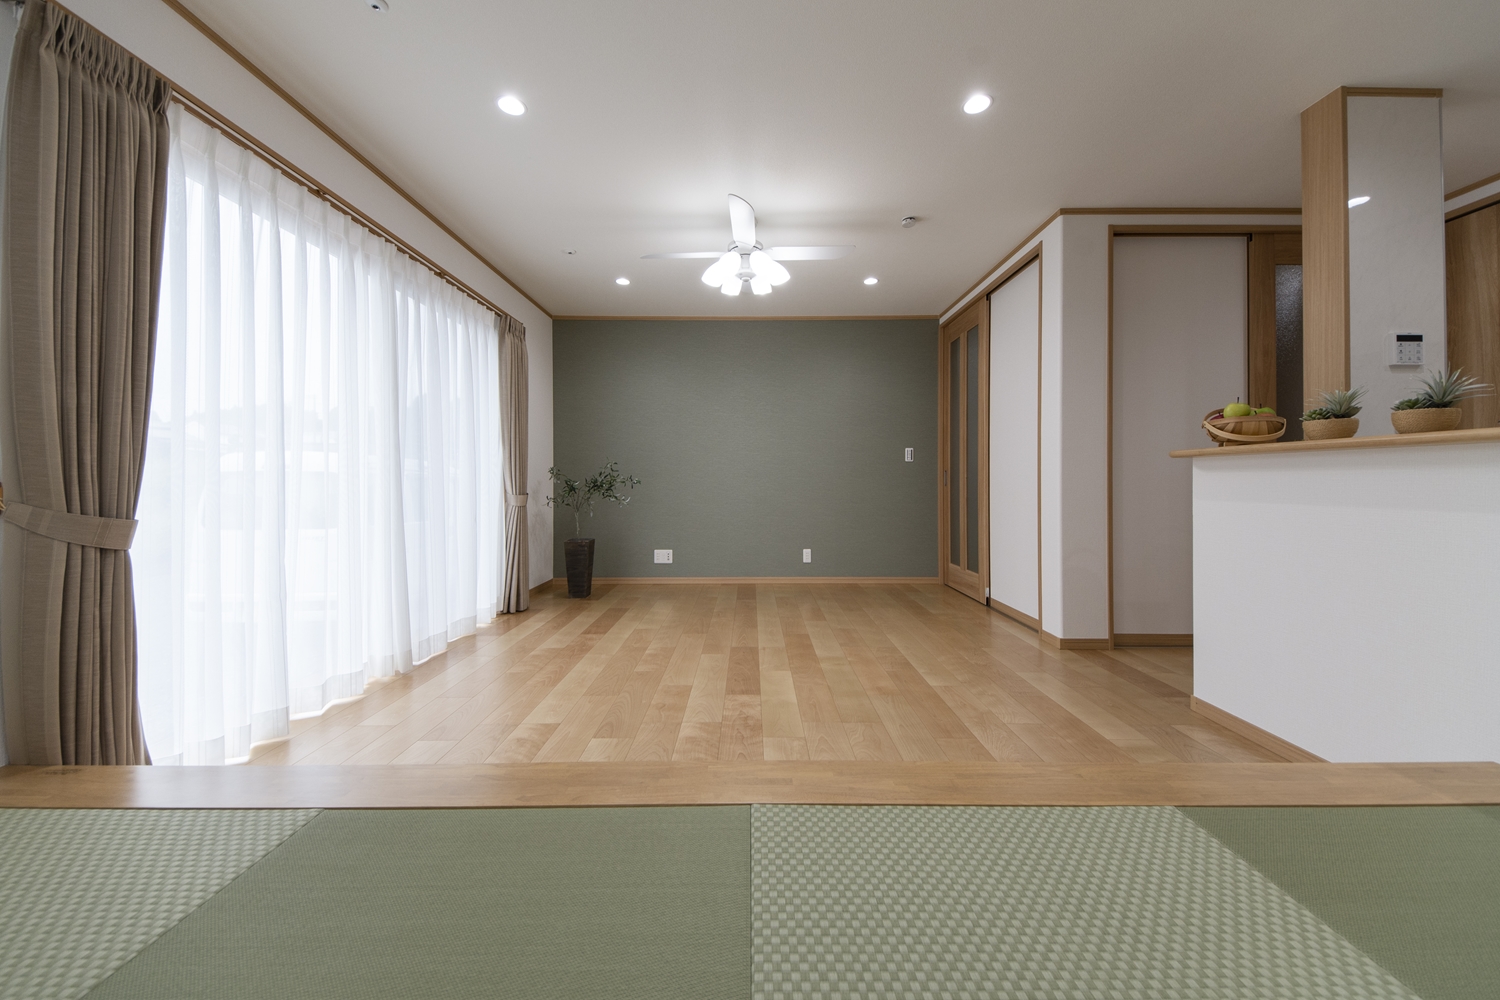 小上がり畳のある、モダンな雰囲気のリビング。畳のさわやかなグリーンが空間を彩ります。